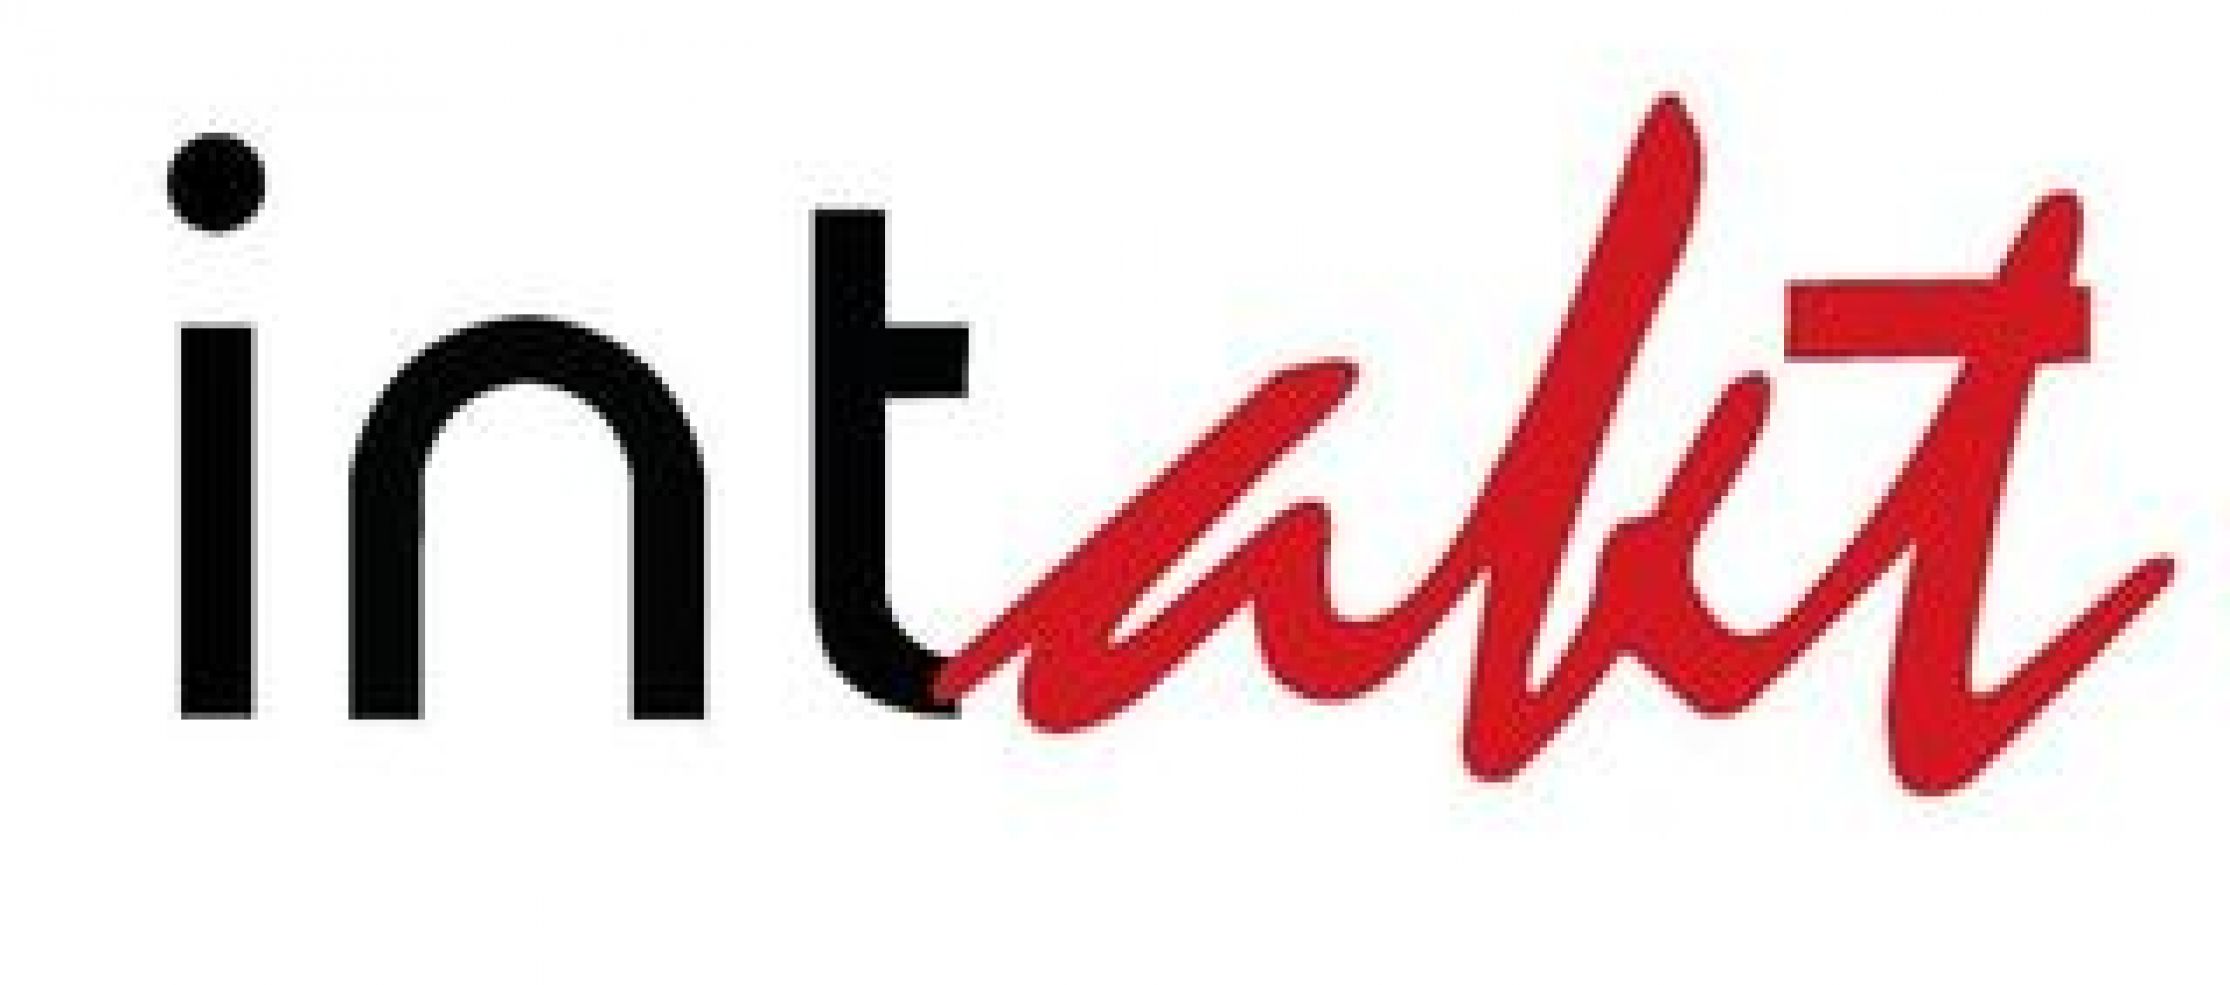 intakt-logo